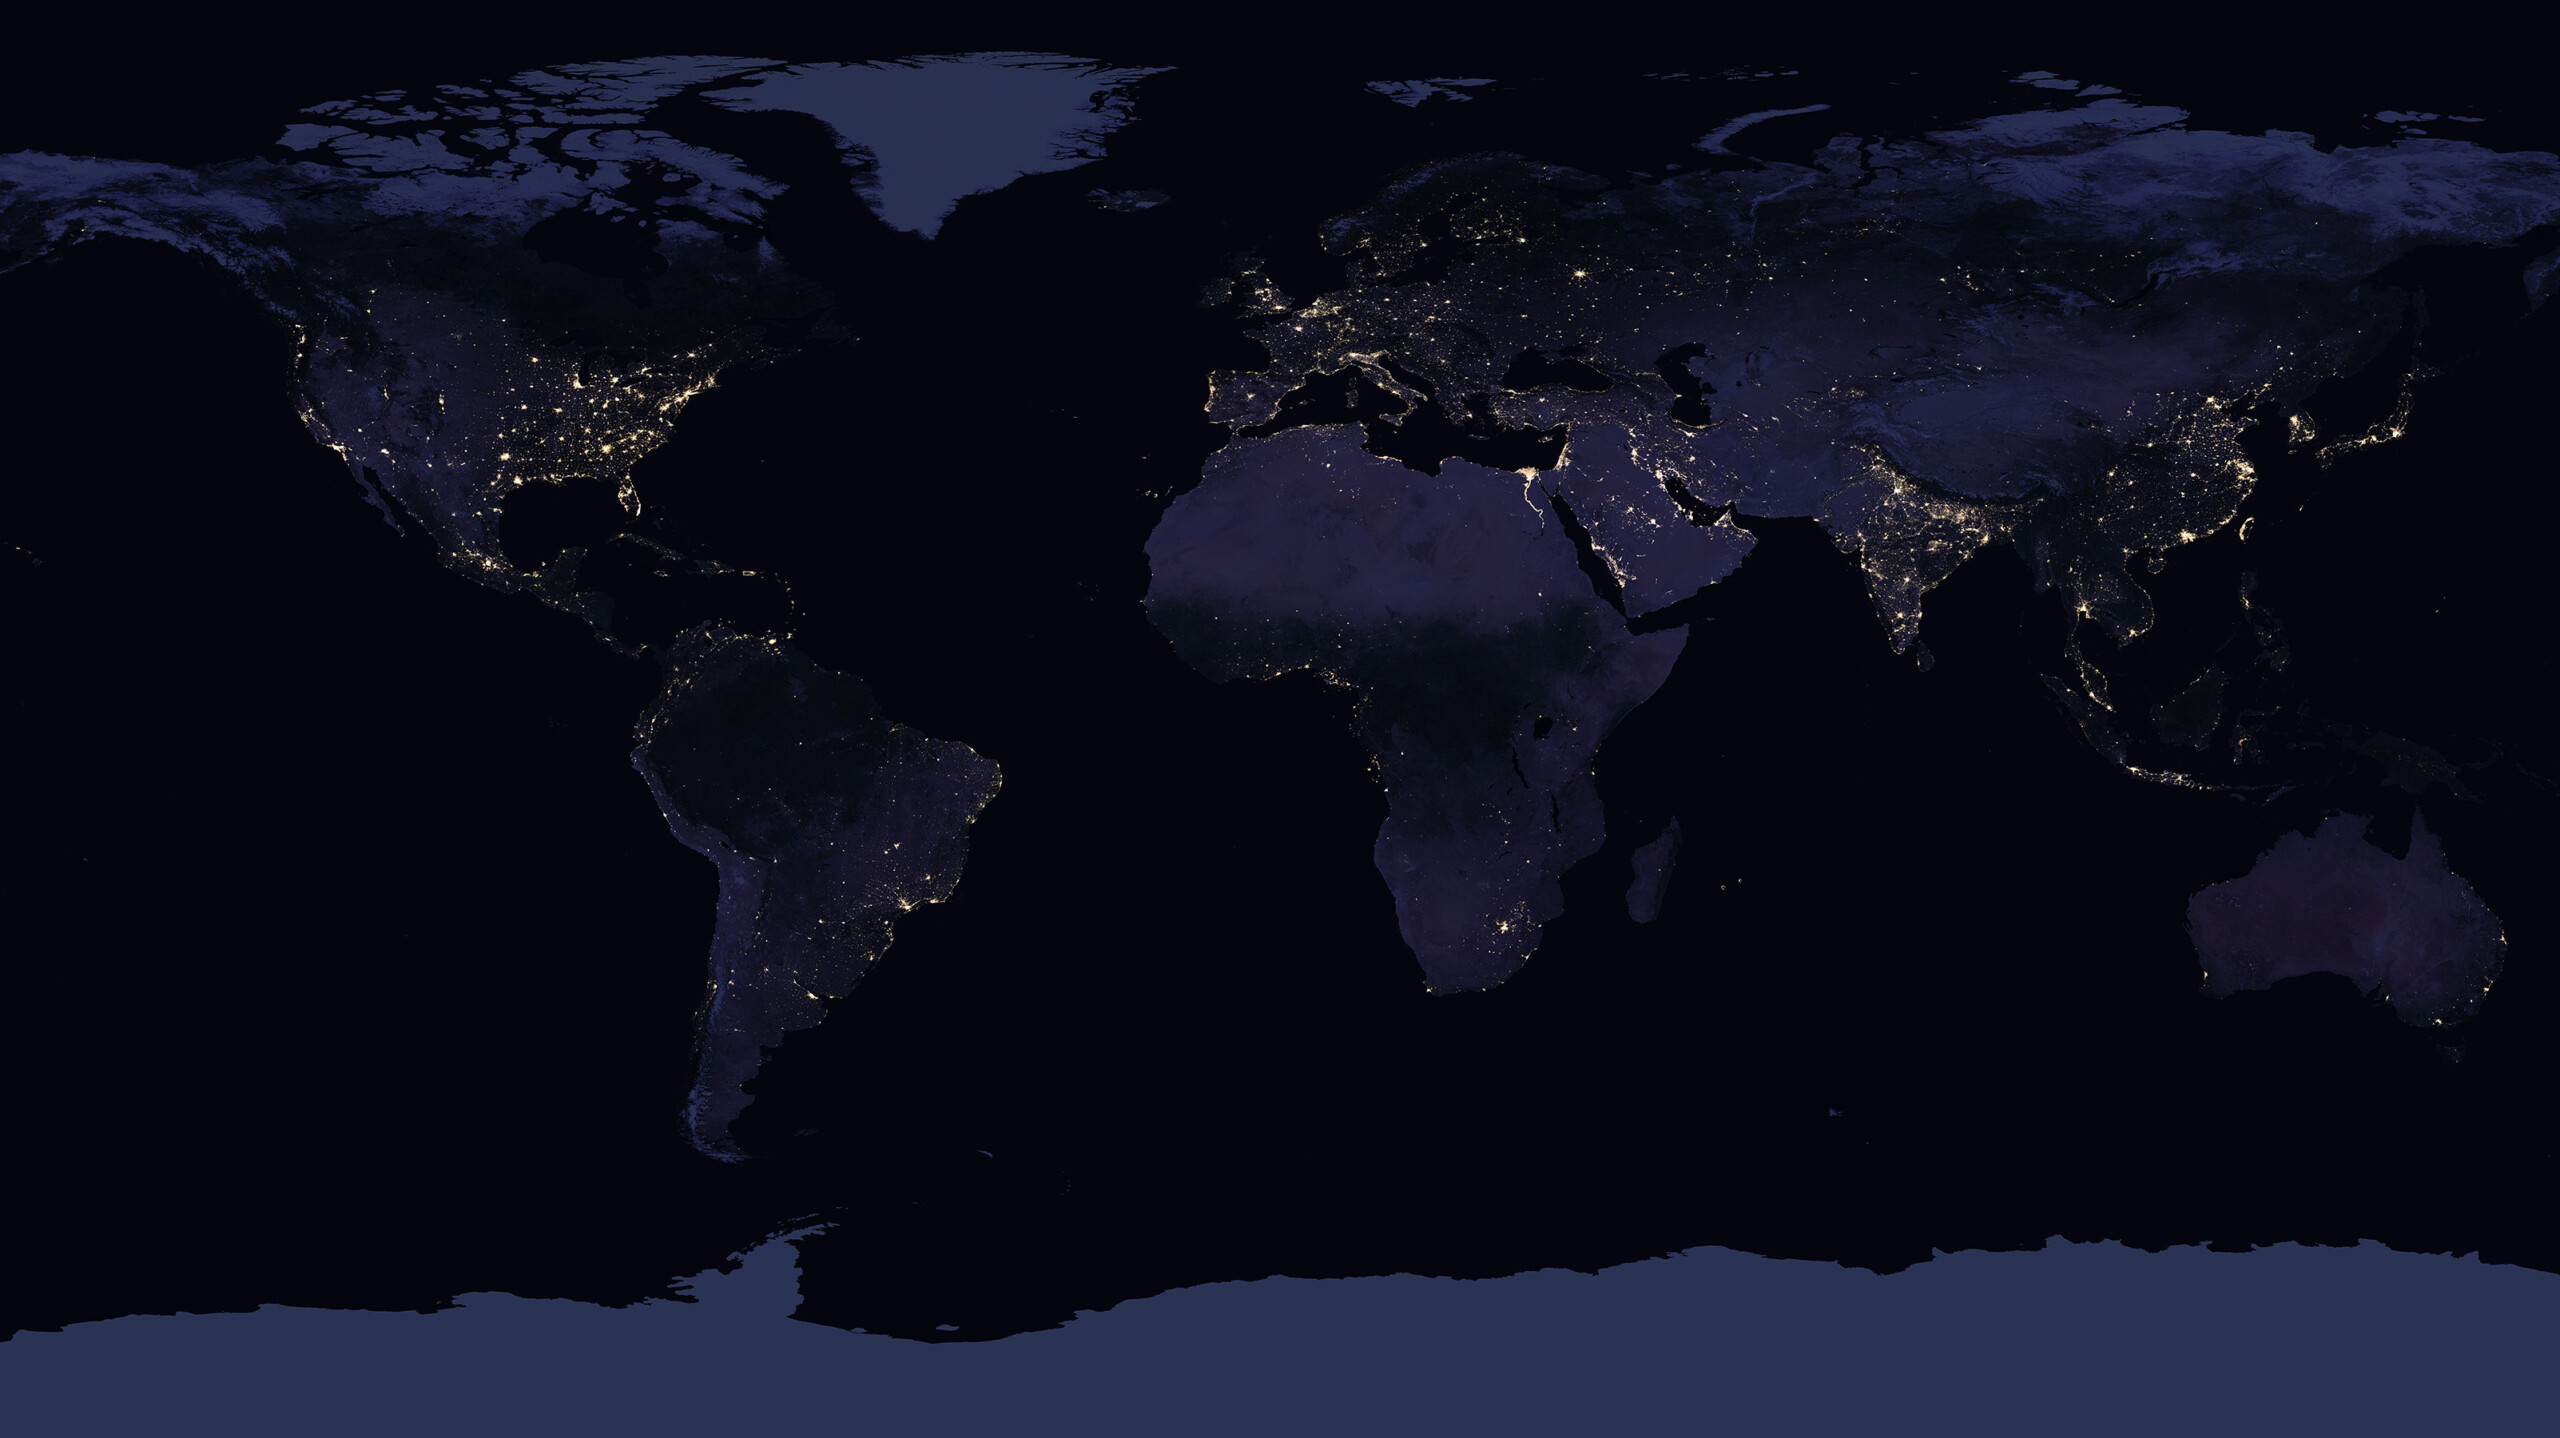 NASA Ver ffentlicht Neue Satellitenaufnahme Der Erde Bei Nacht Heise Online